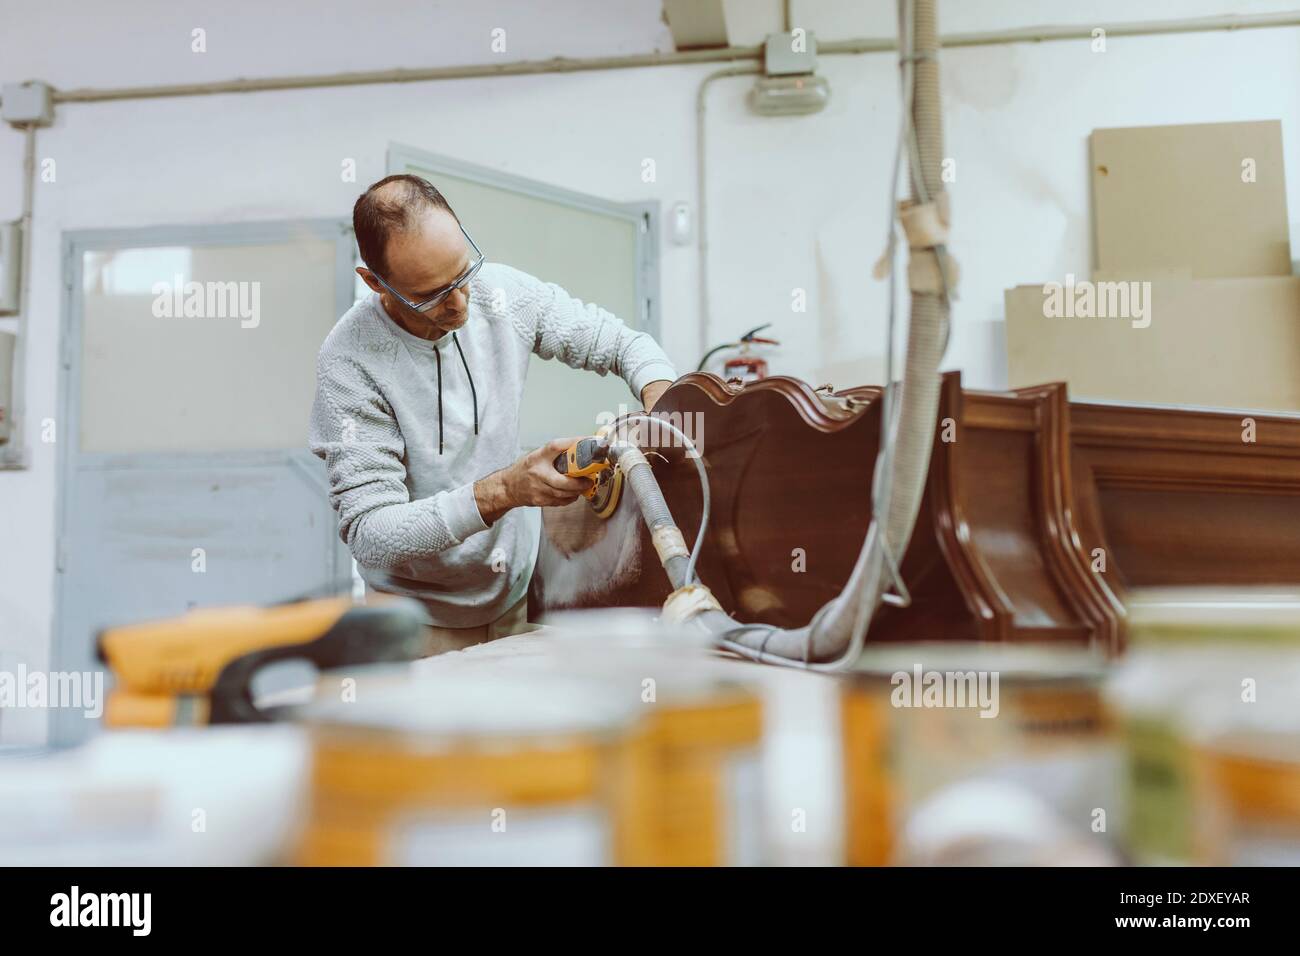 Operatore manuale che utilizza la levigatrice sui mobili durante il lavoro in officina Foto Stock